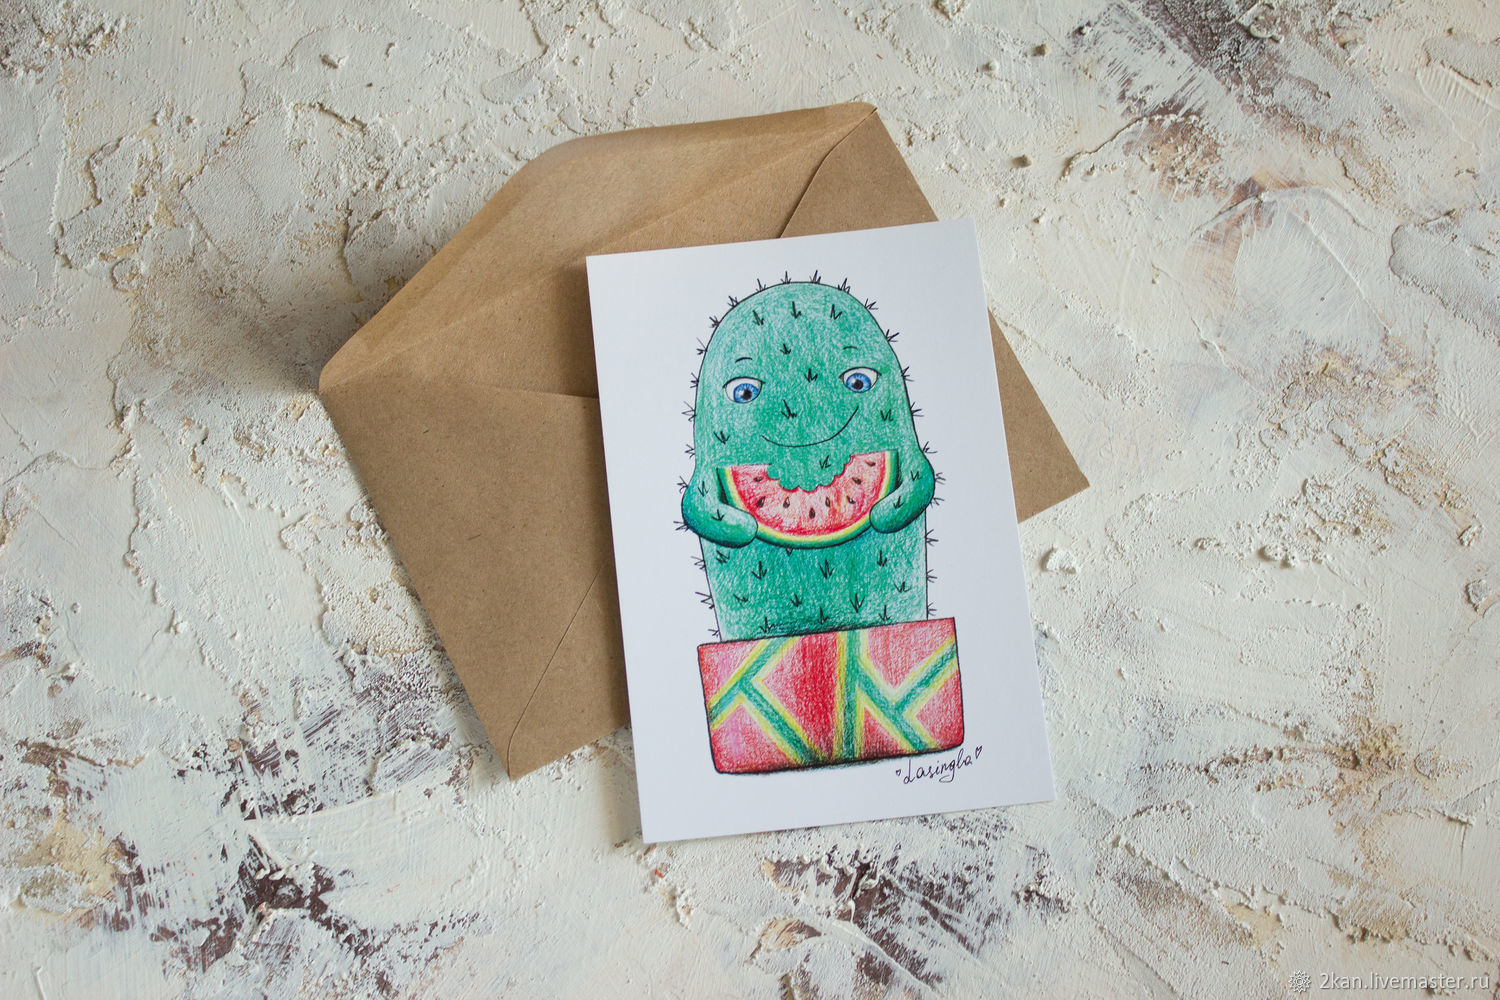 Милый кактус с арбузом - почтовая открытка, Открытки, Ступино,  Фото №1